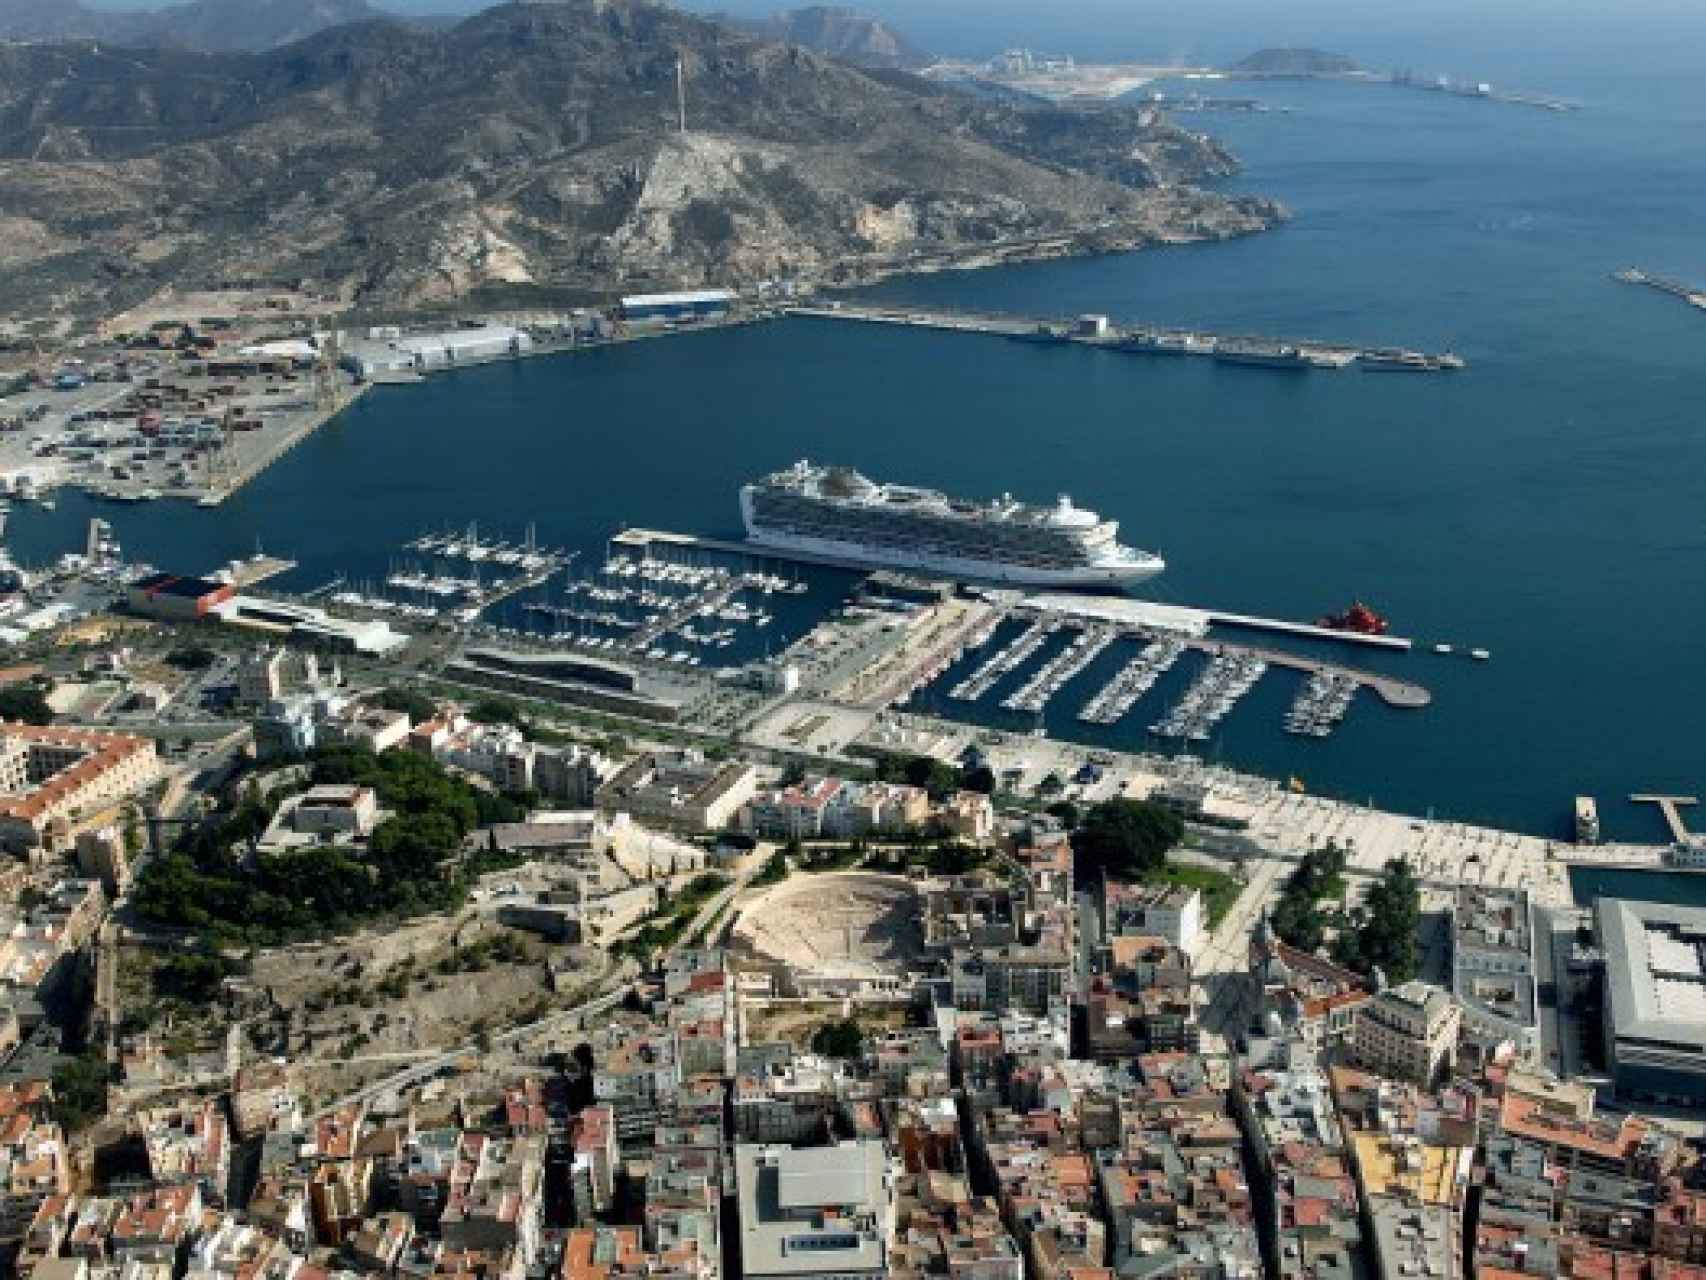 Imagen aérea de Cartagena y su litoral.